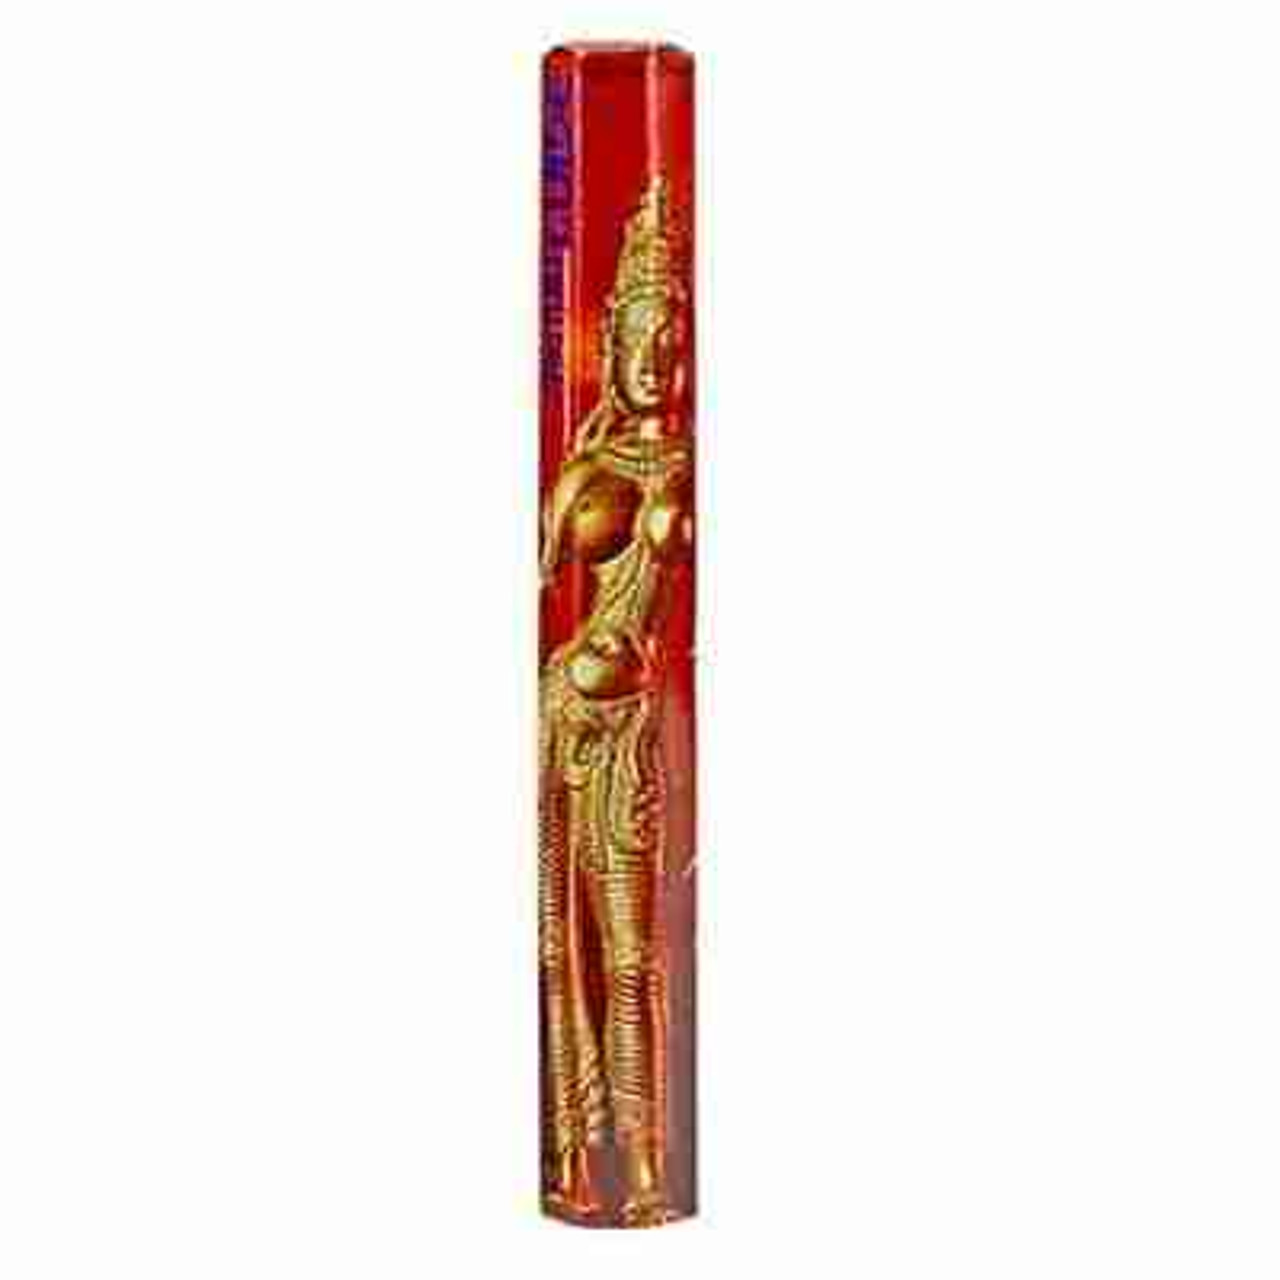 Spiritual Guide Incense Sticks